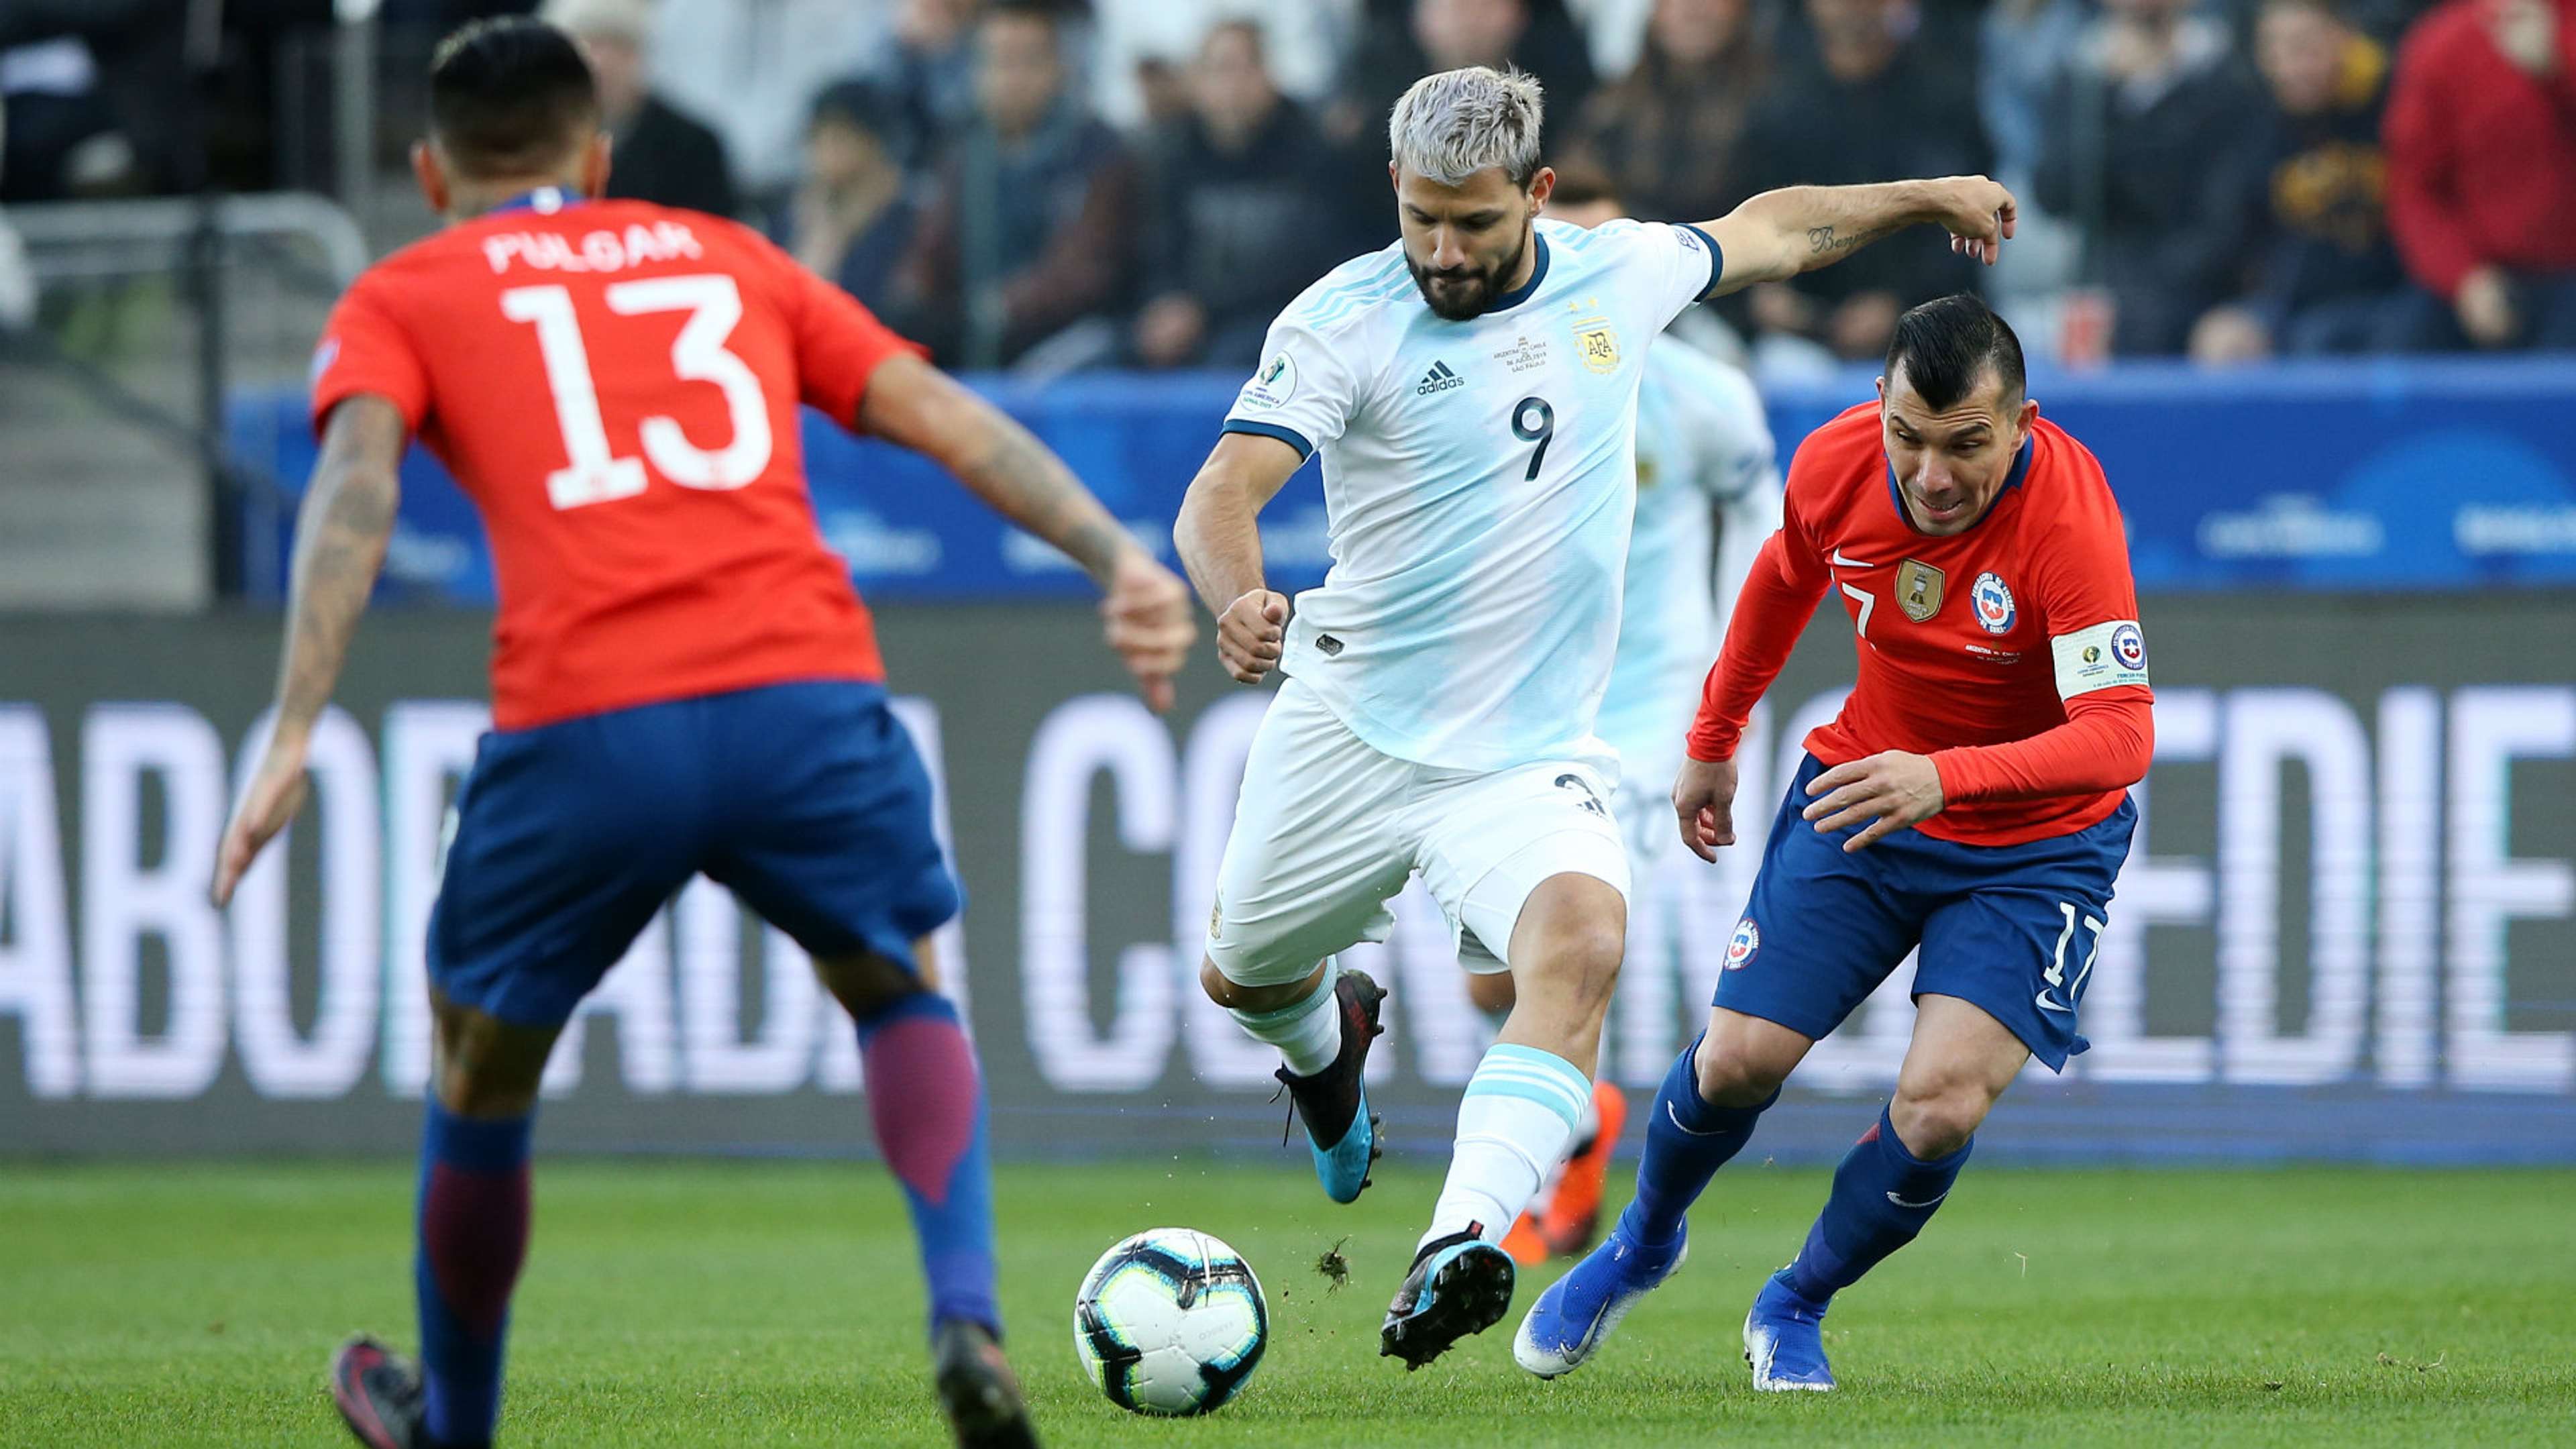 Sergio Aguero Argentina vs Chile Copa America 2019